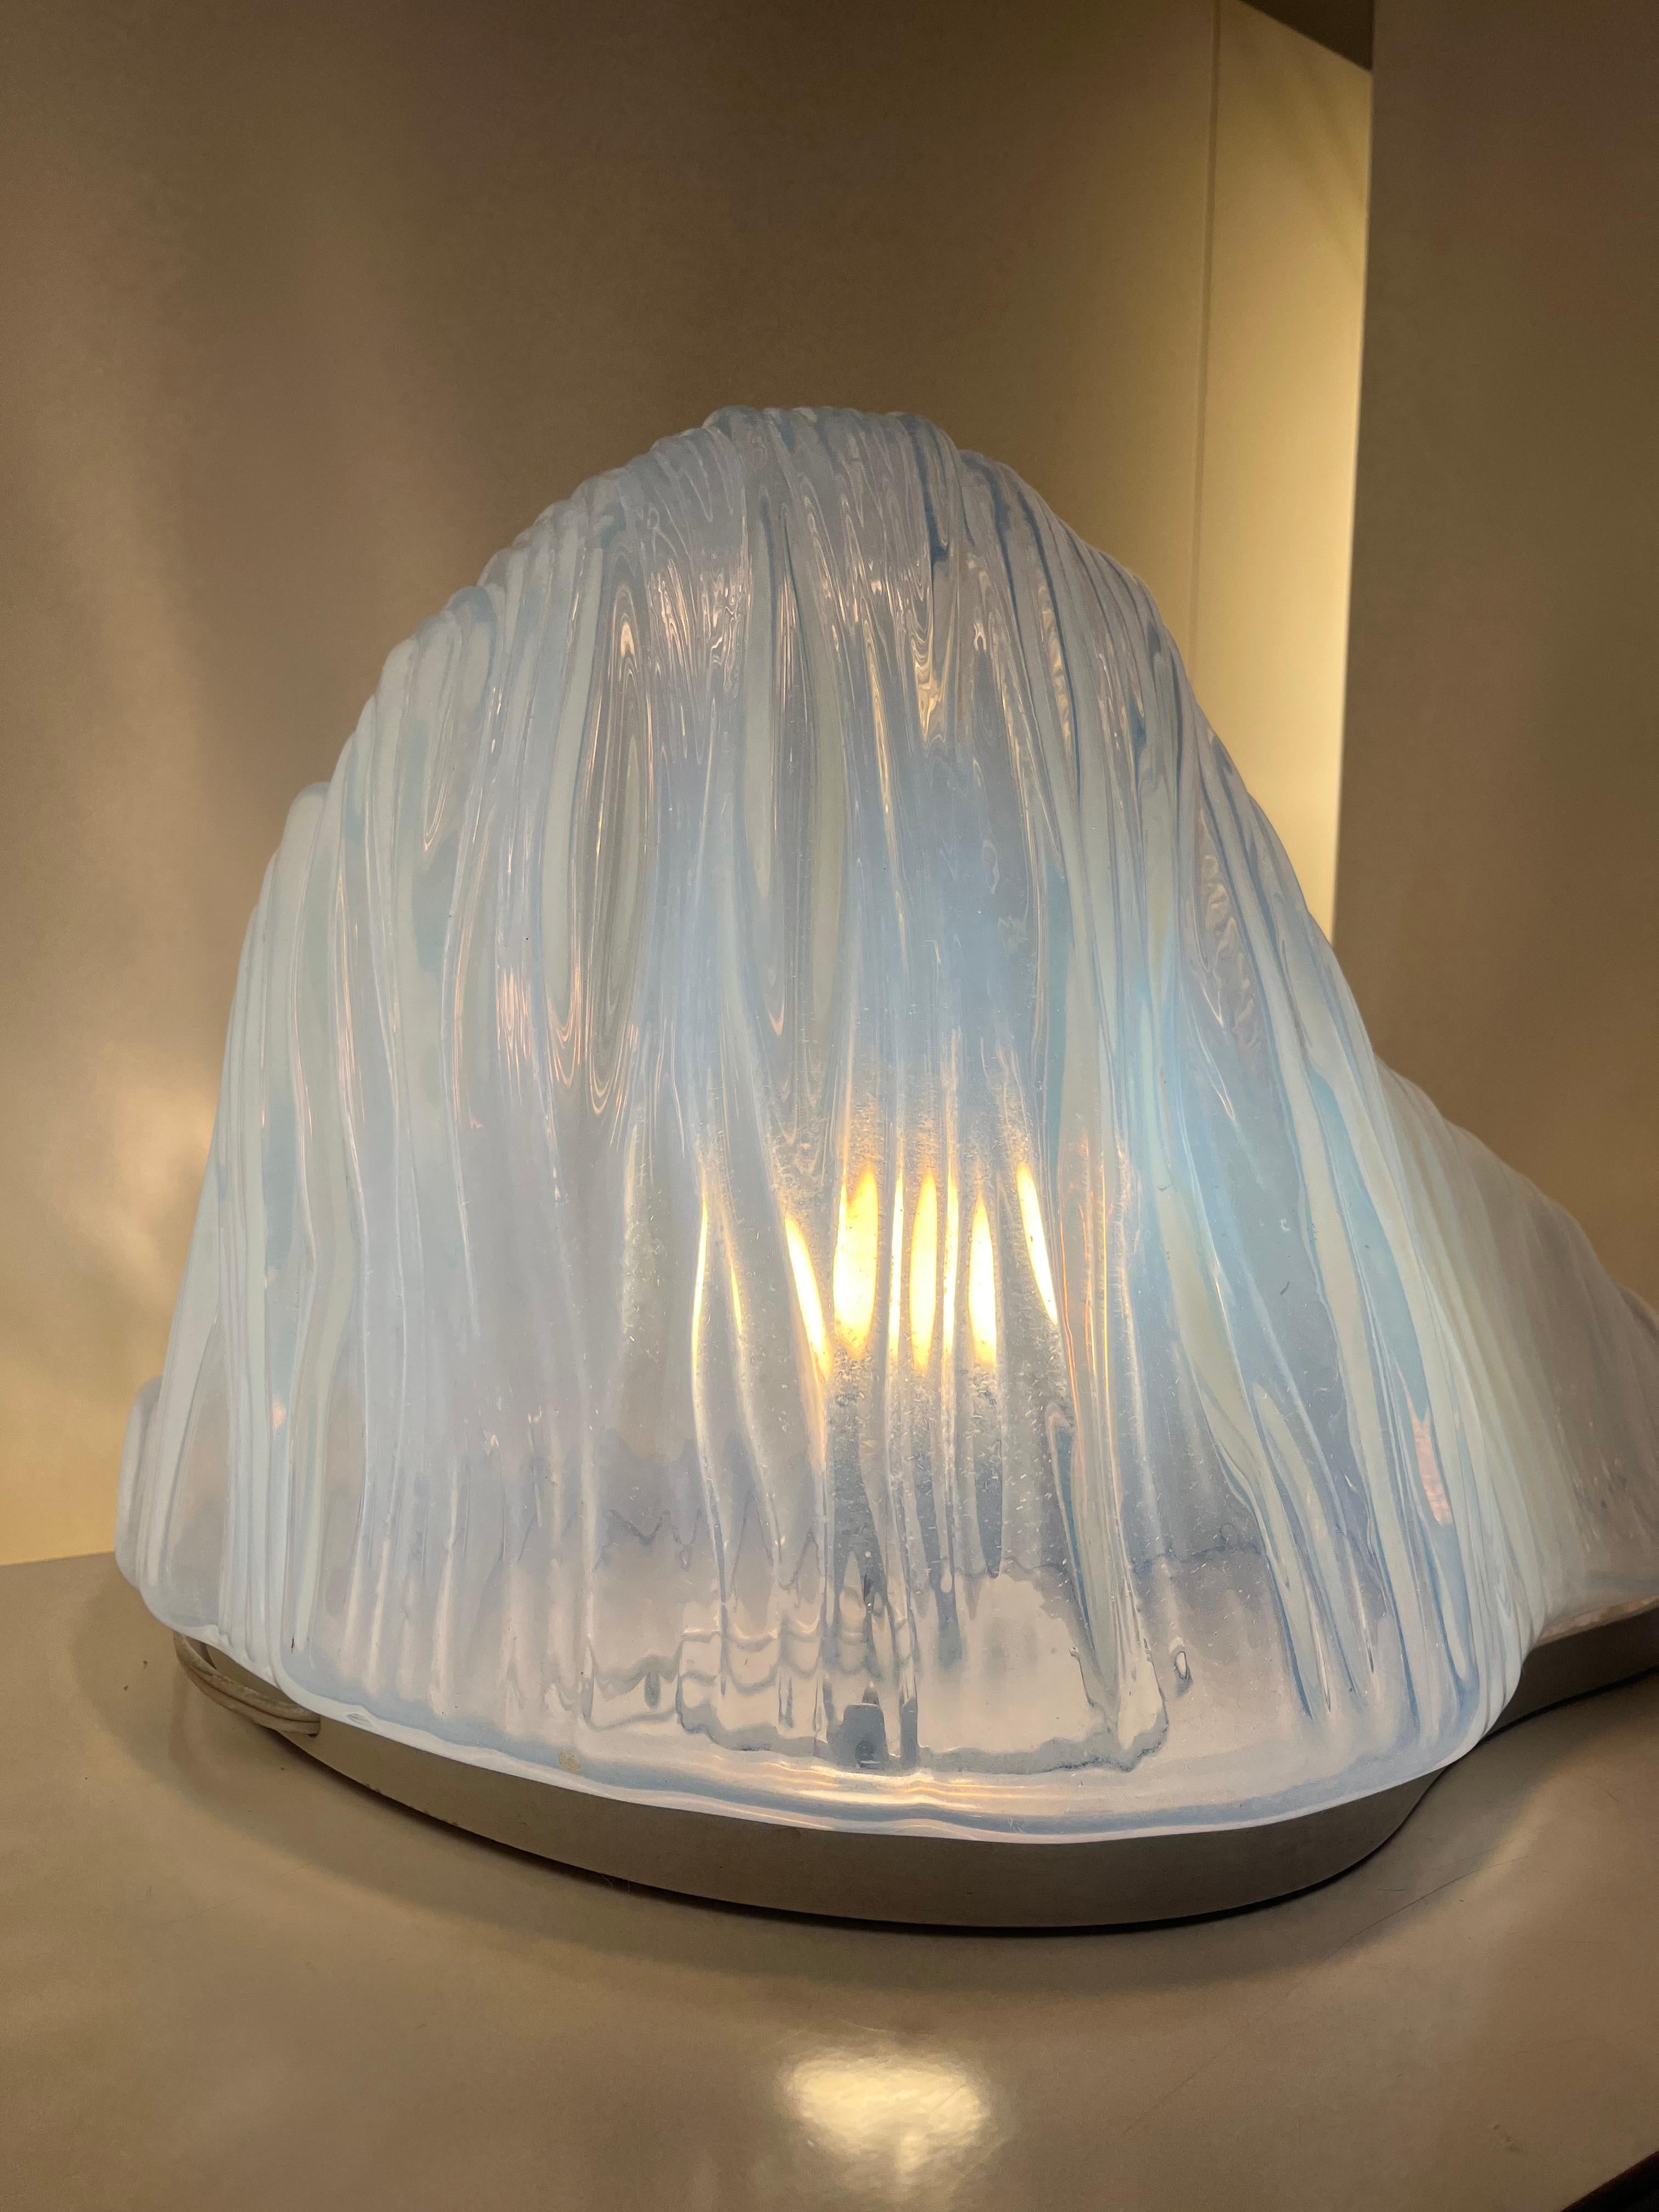 Lampada da tavolo in vetro di Murano modello Iceberg disegnata da Carlo Nason per Mazzega nel 1960.

Ottime condizioni. 

Carlo Scarpa è stato un architetto e designer italiano, tra i più importanti del XX secolo. 

